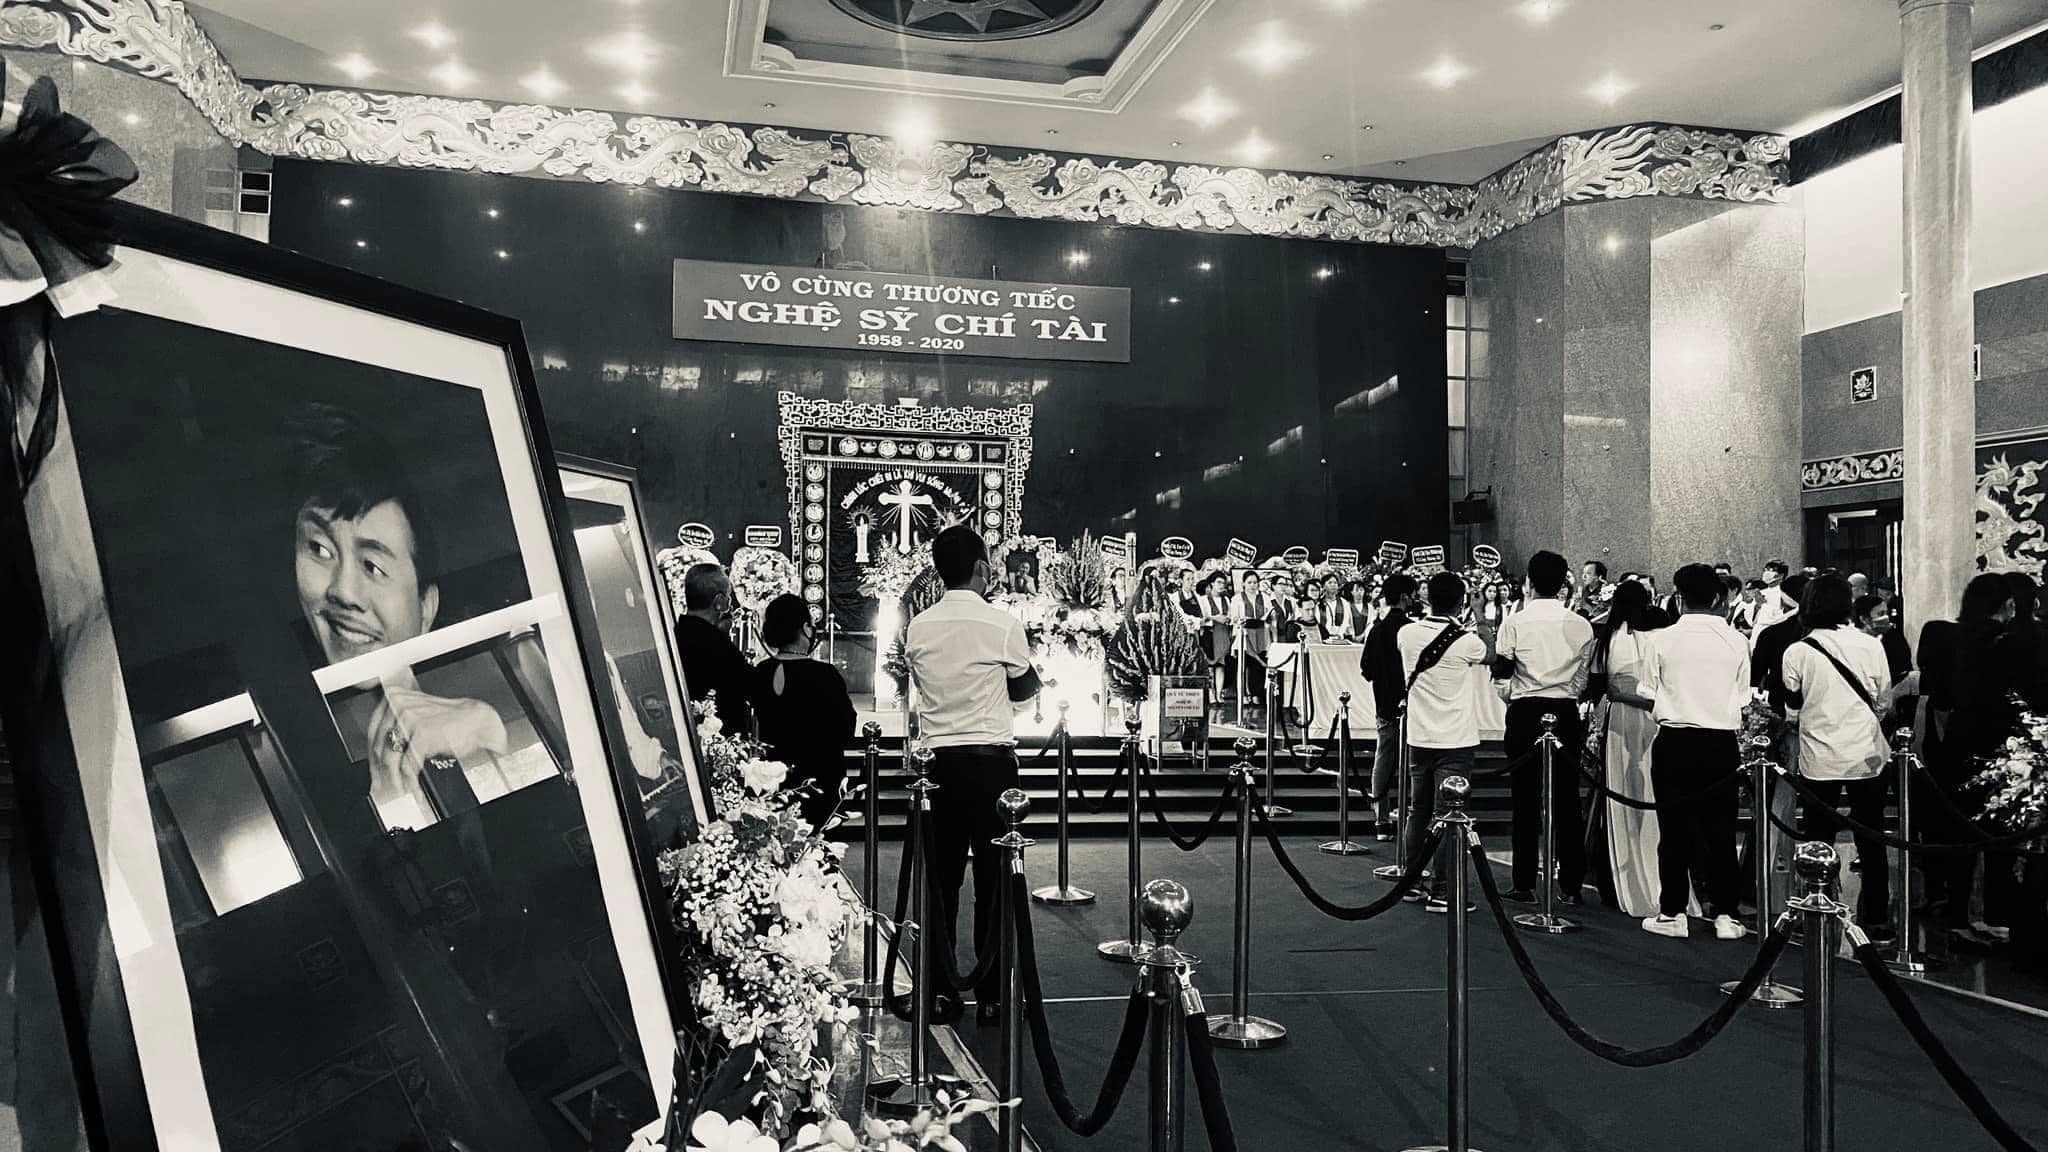 Khoảnh khắc khiến nhiều người xúc động trong tang lễ của cố nghệ sĩ Chí Tài - 1